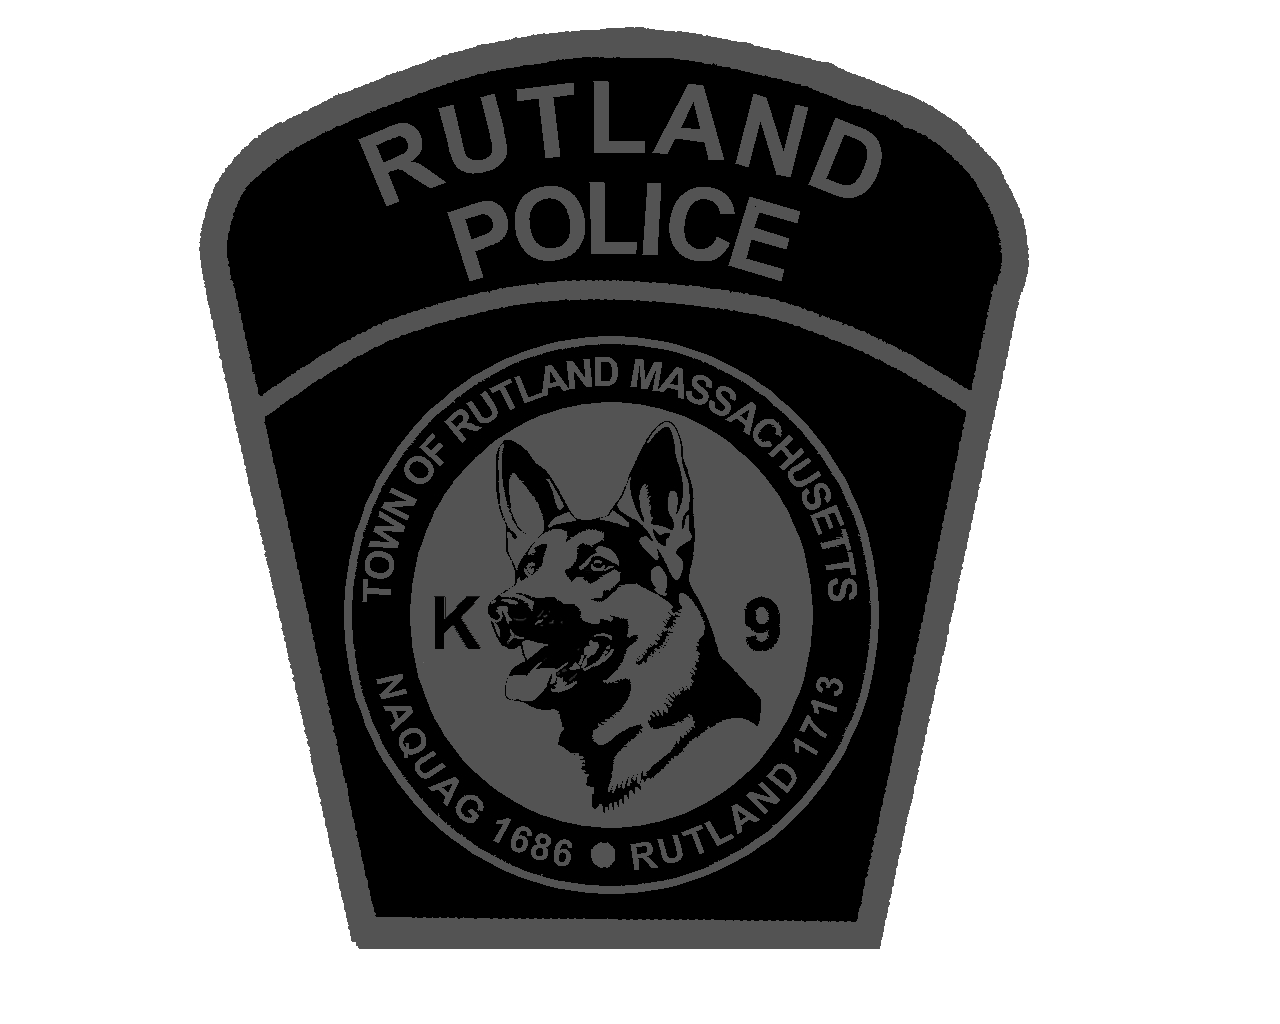 Rutland Police 5K-9 logo on RaceRaves